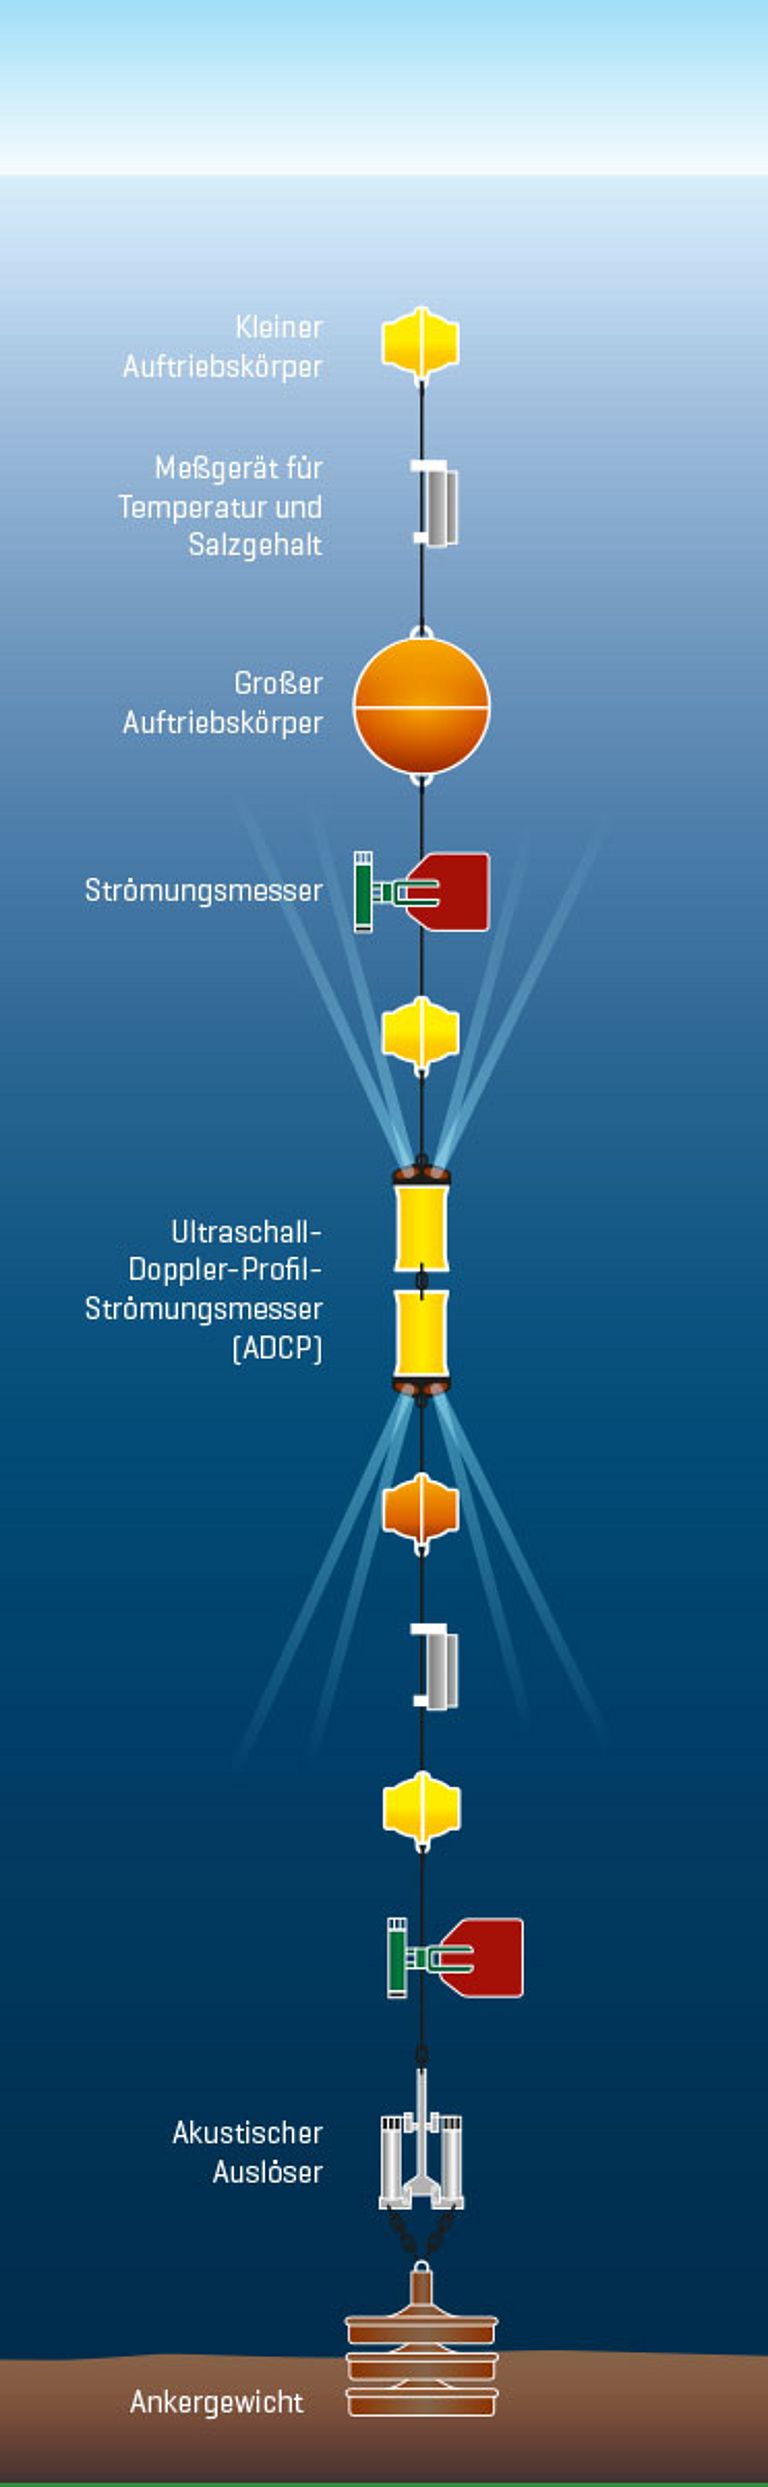 Schema einer ozeanographischen Verankerung. Grafik: Christoph Kersten/GEOMAR